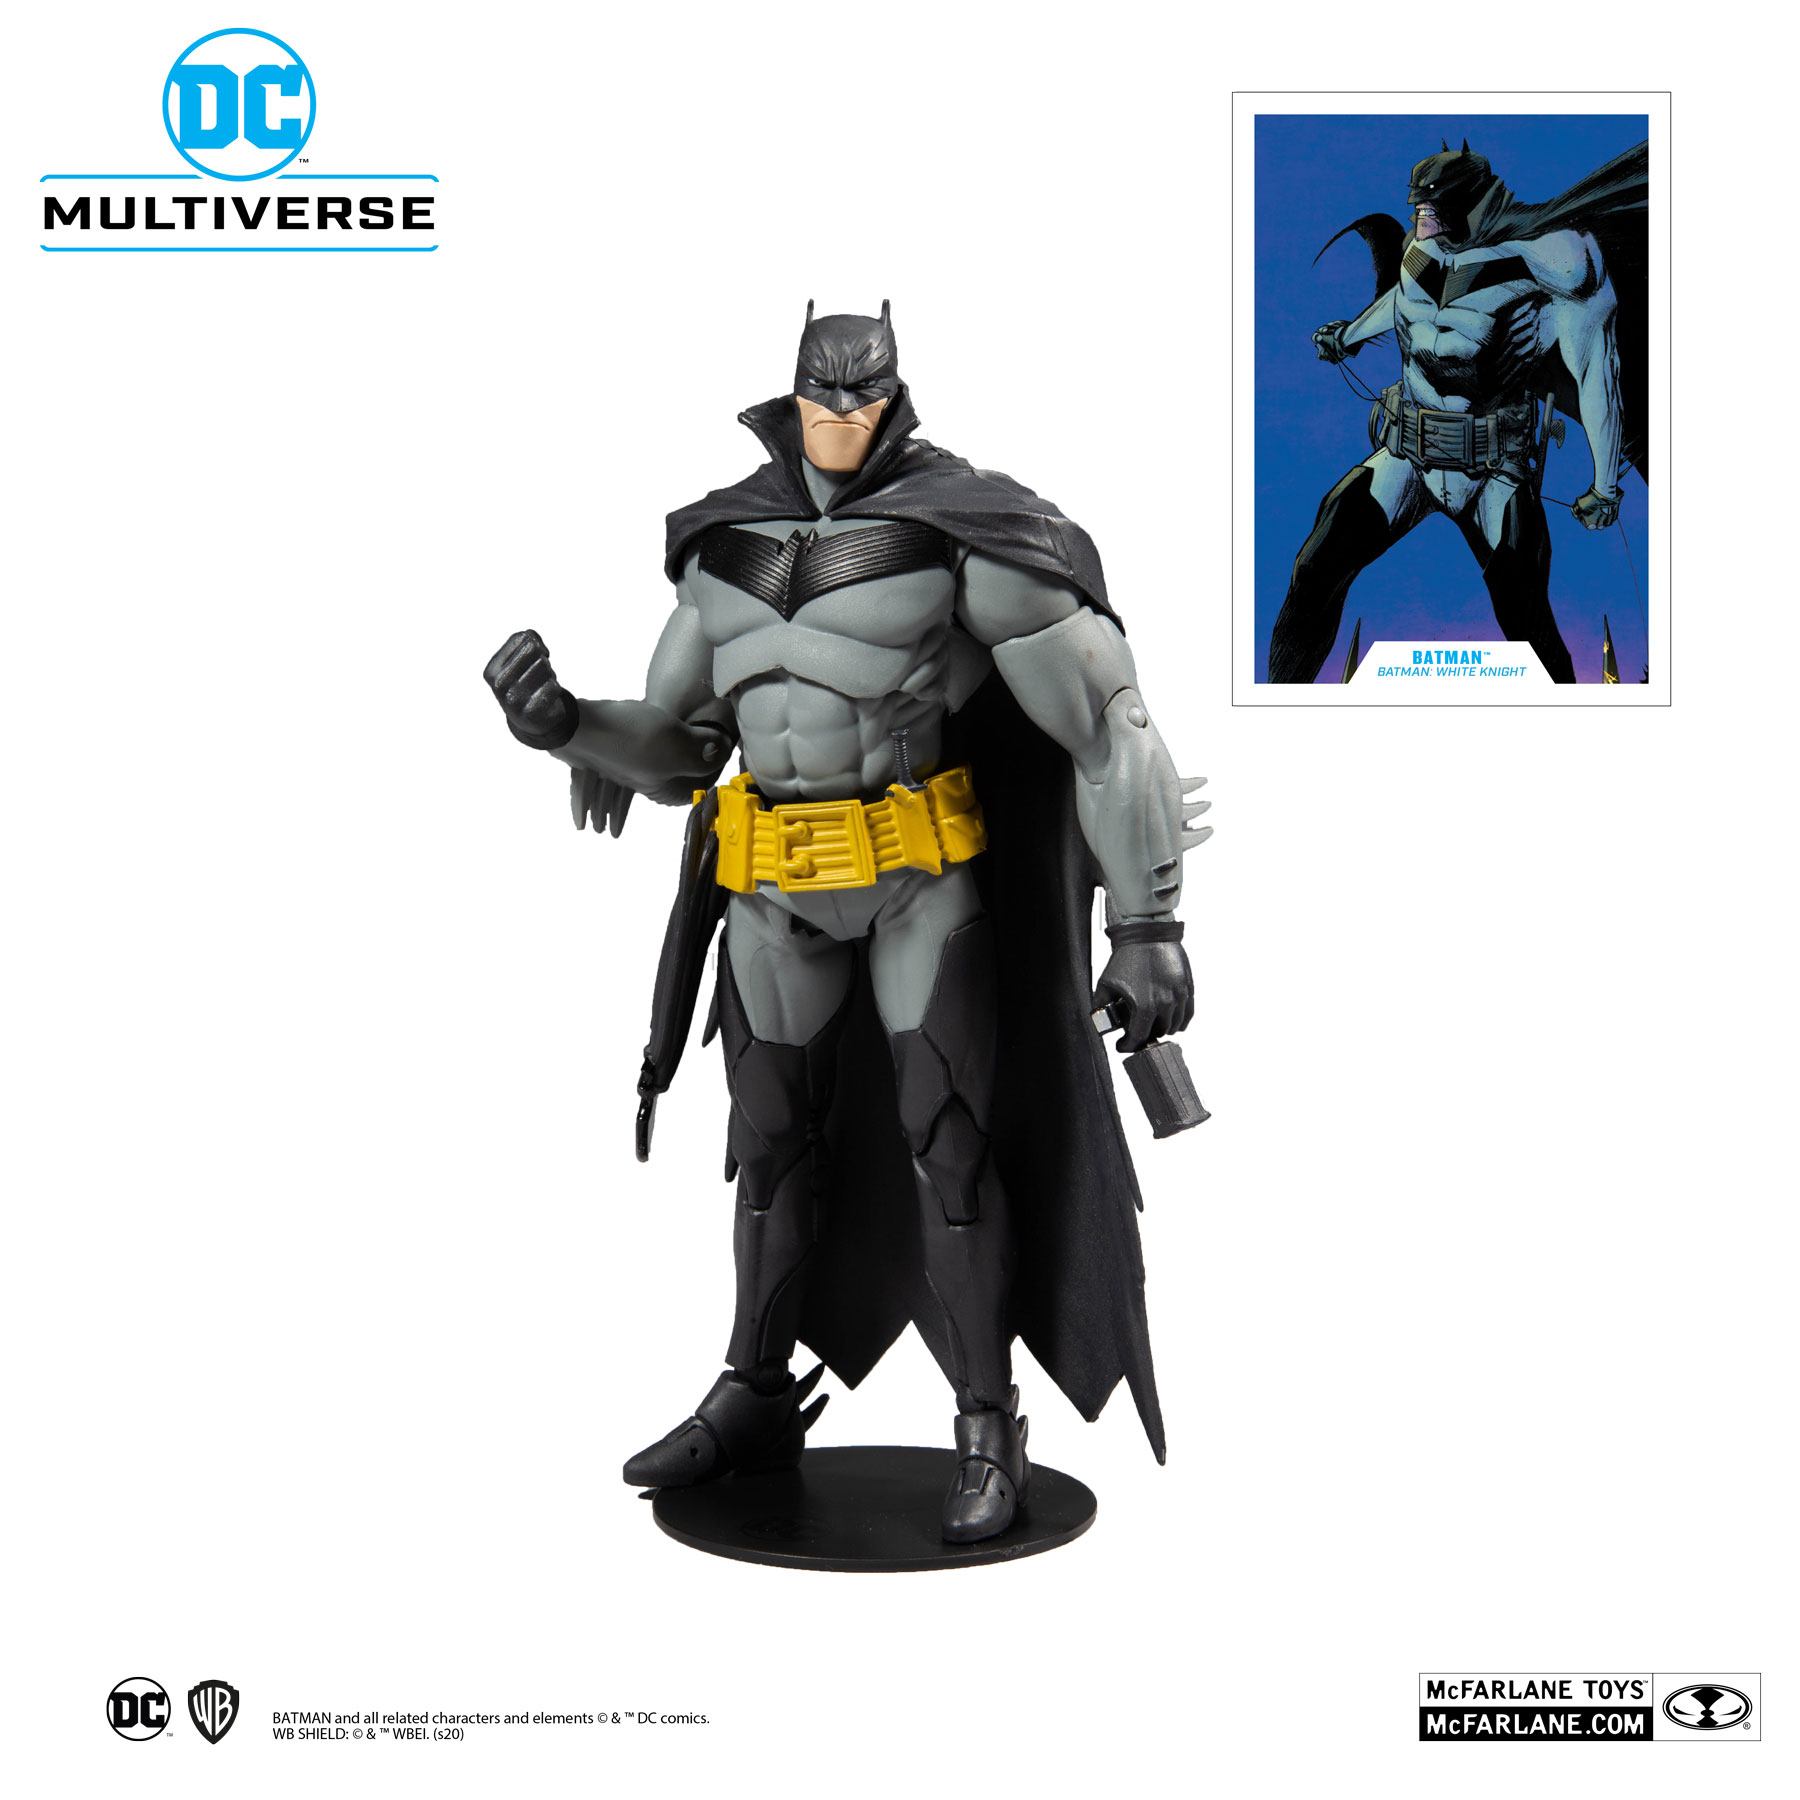 White batman. DC Multiverse фигурки Бэтмен. MCFARLANE фигурки DC Batman. Фигурка Batman MCFARLANE. Batman MCFARLANE Toys DC Multiverse.